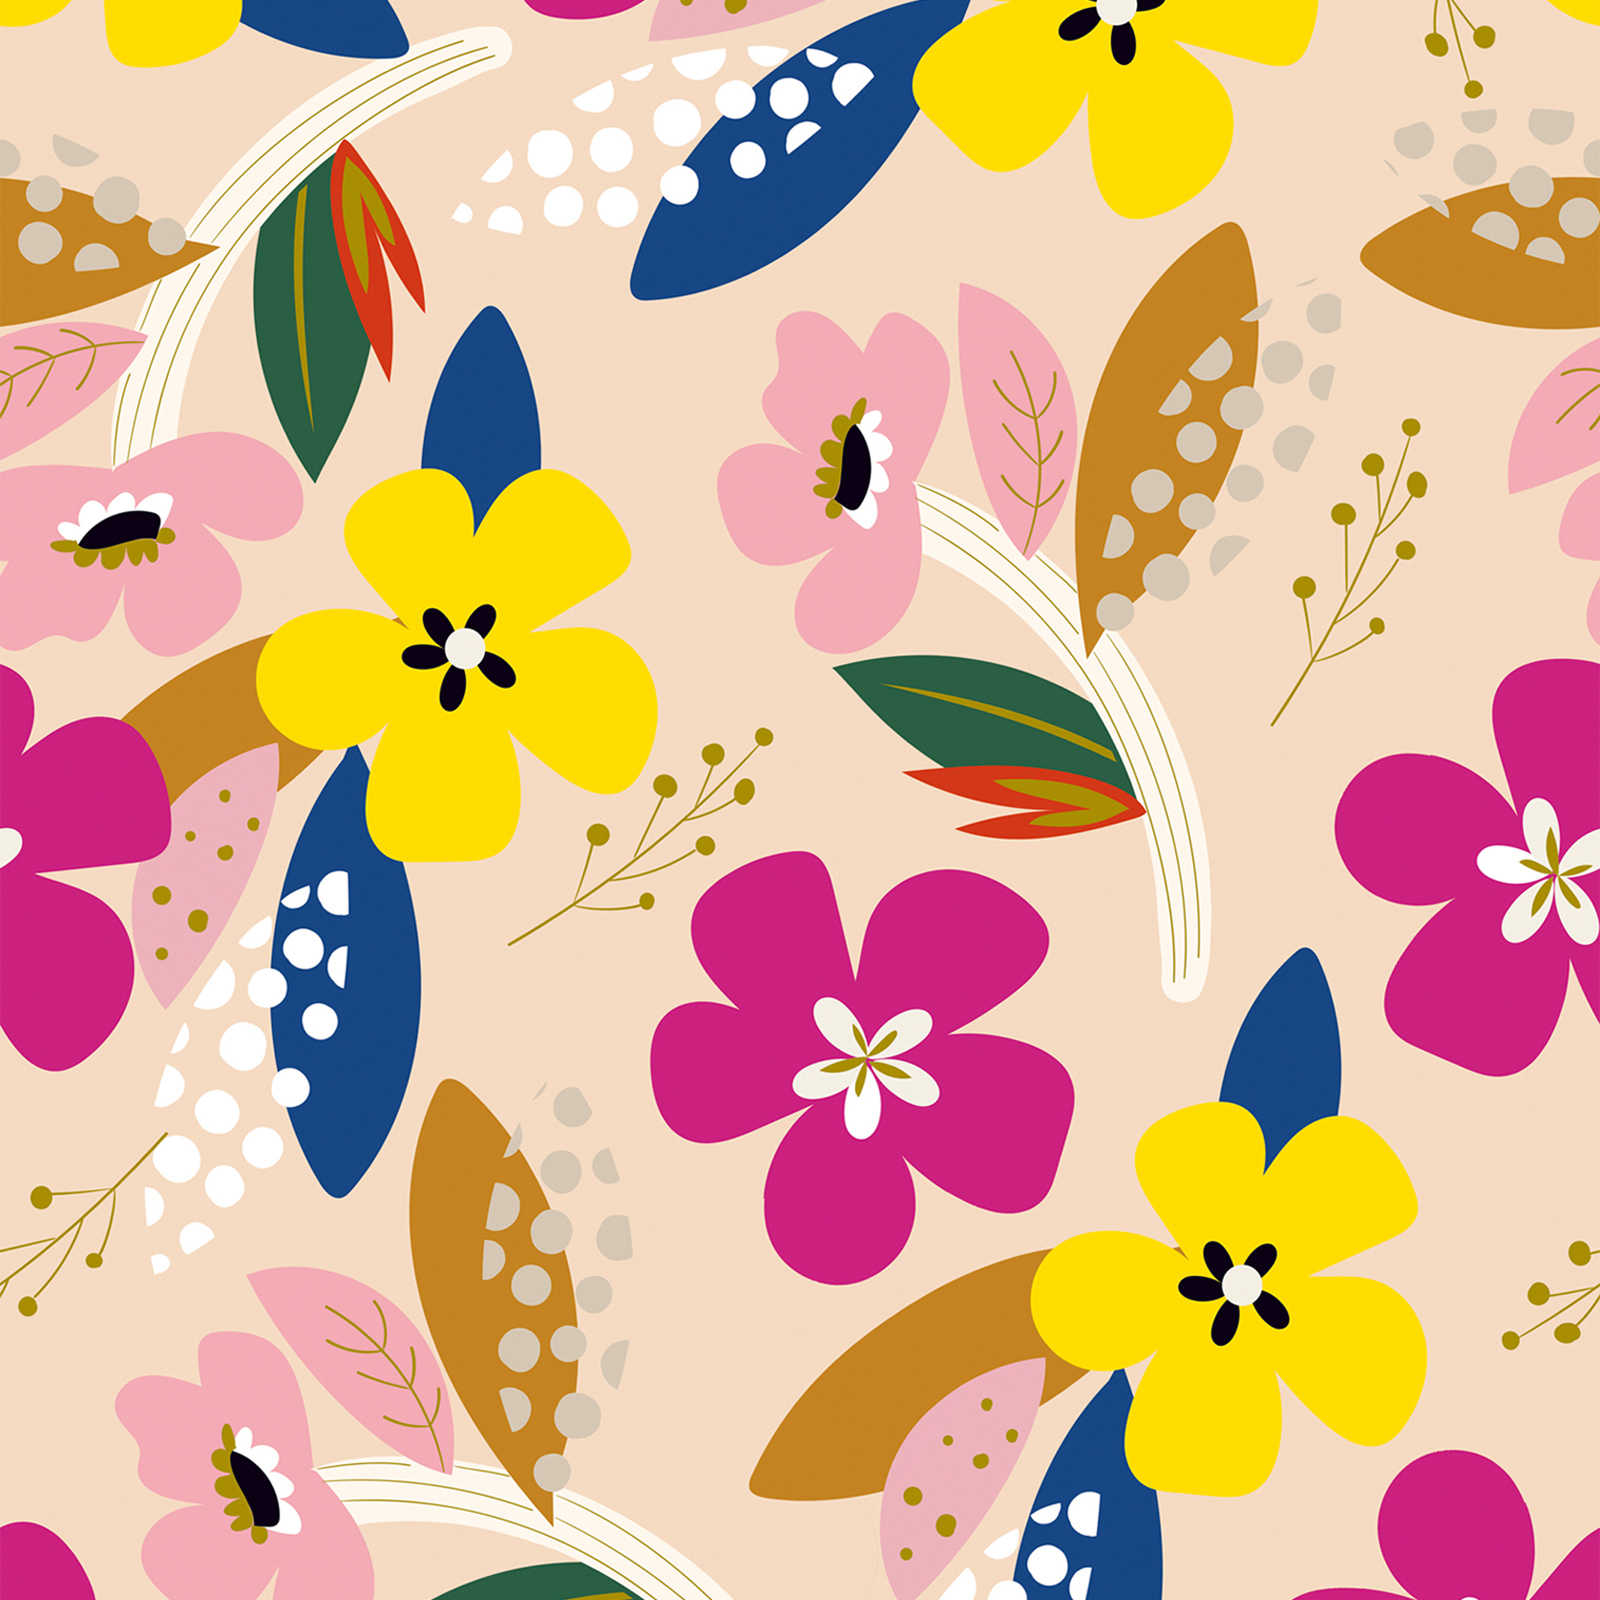 Tapete mit buntem Blumenmuster in kräftigen Farben – Bunt, Beige, Gelb
